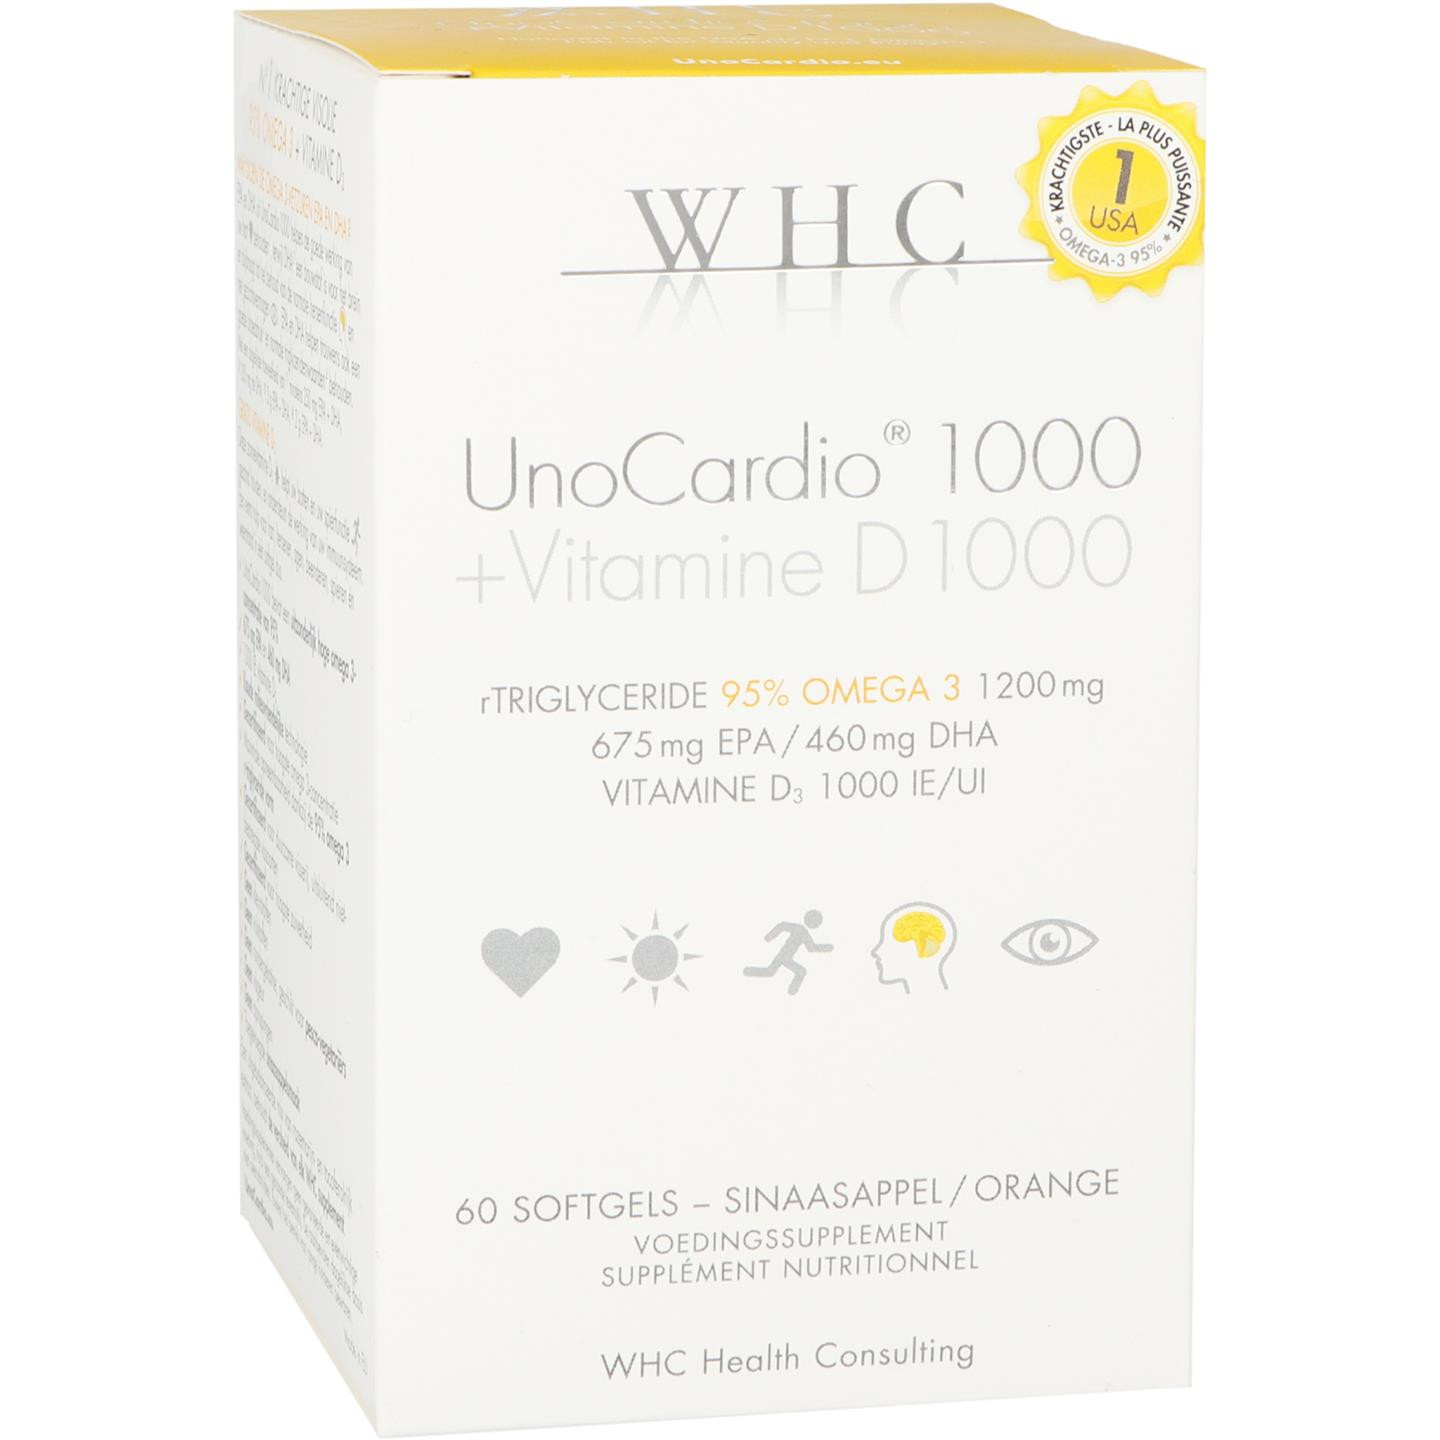 UnoCardio 1000 + Vitamine D 1000